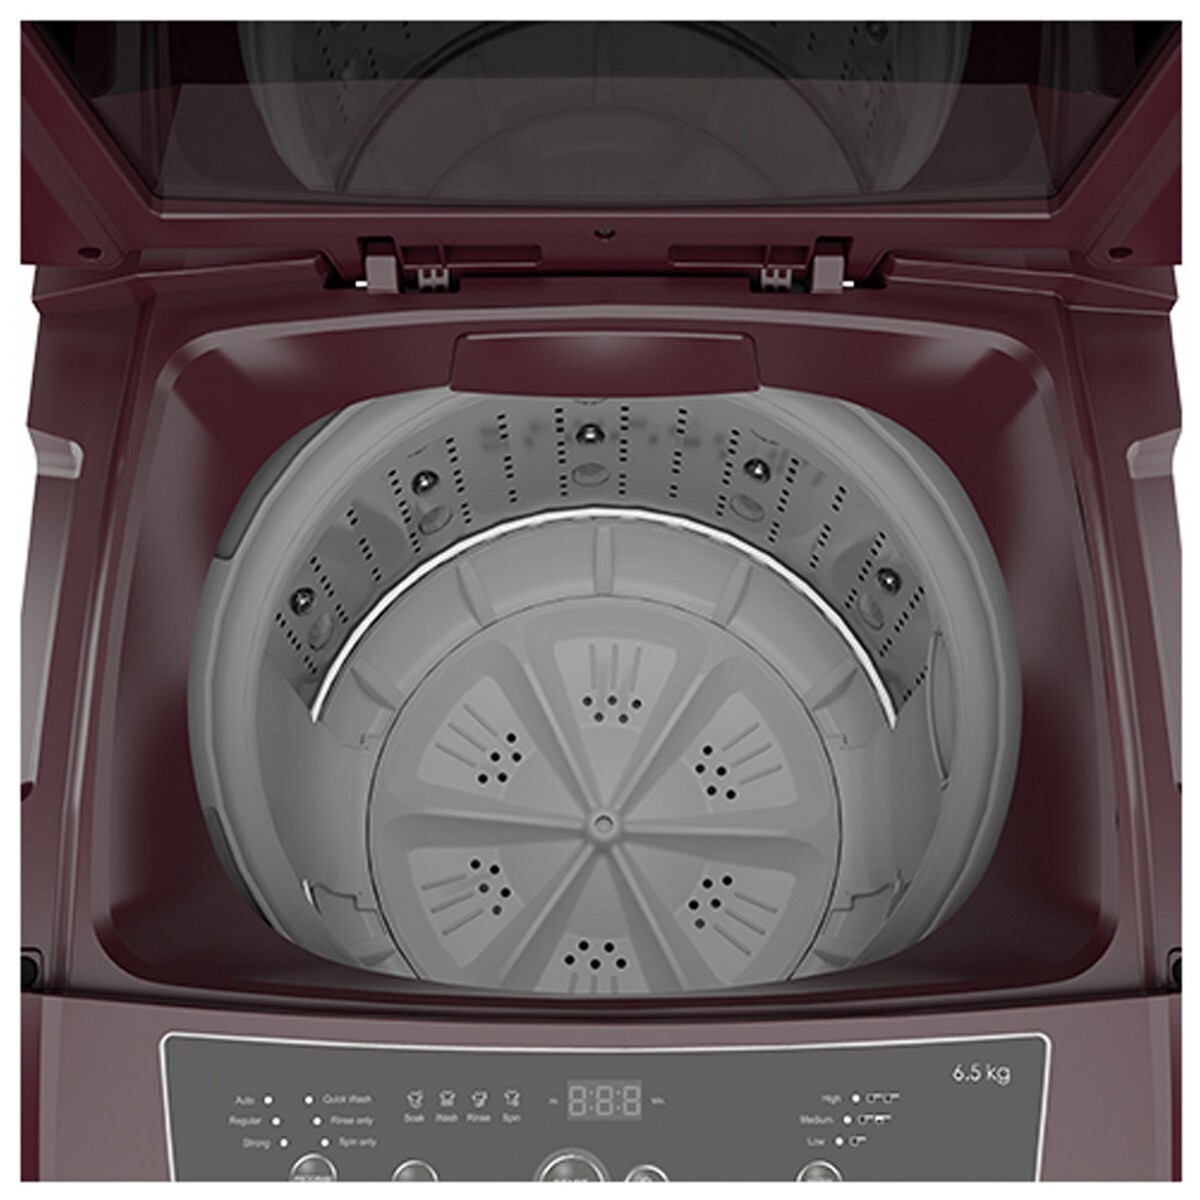 Godrej Top Load Washing Machine WTEON ADR 65 5.0 PFDTN AURD